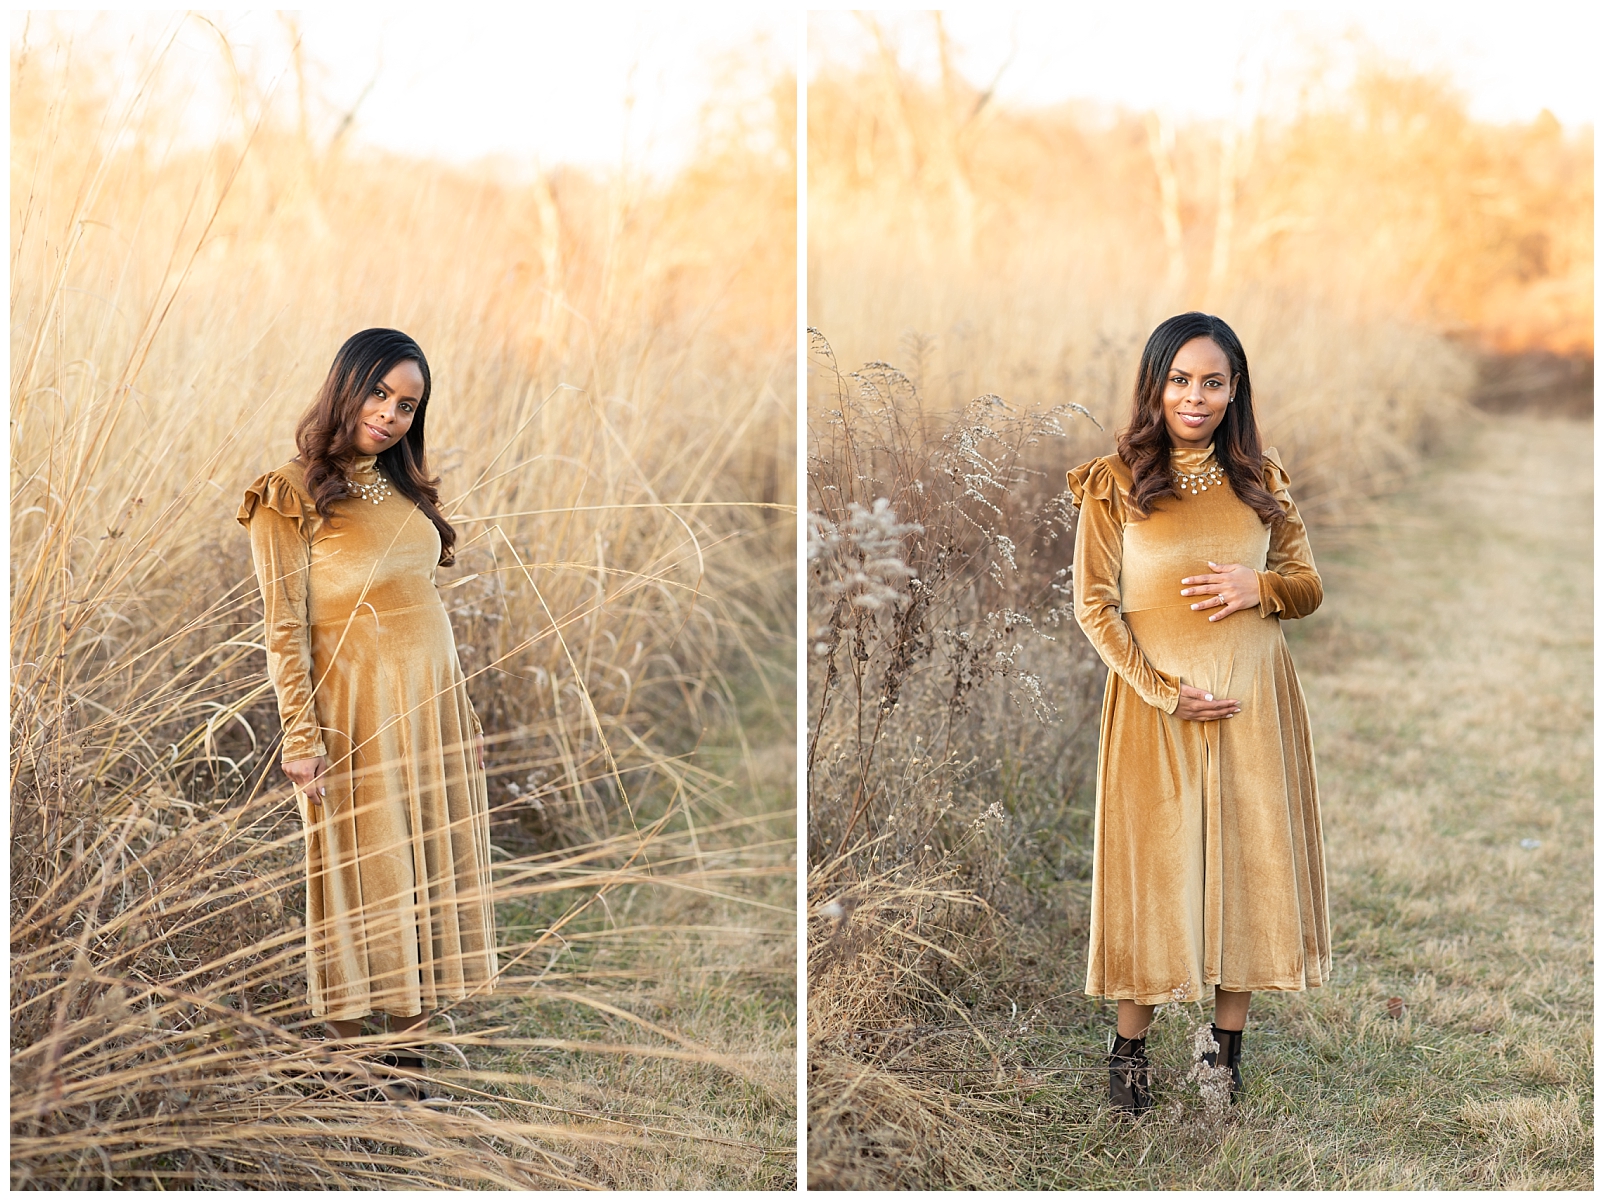 Lady wearing a golden dress in a field